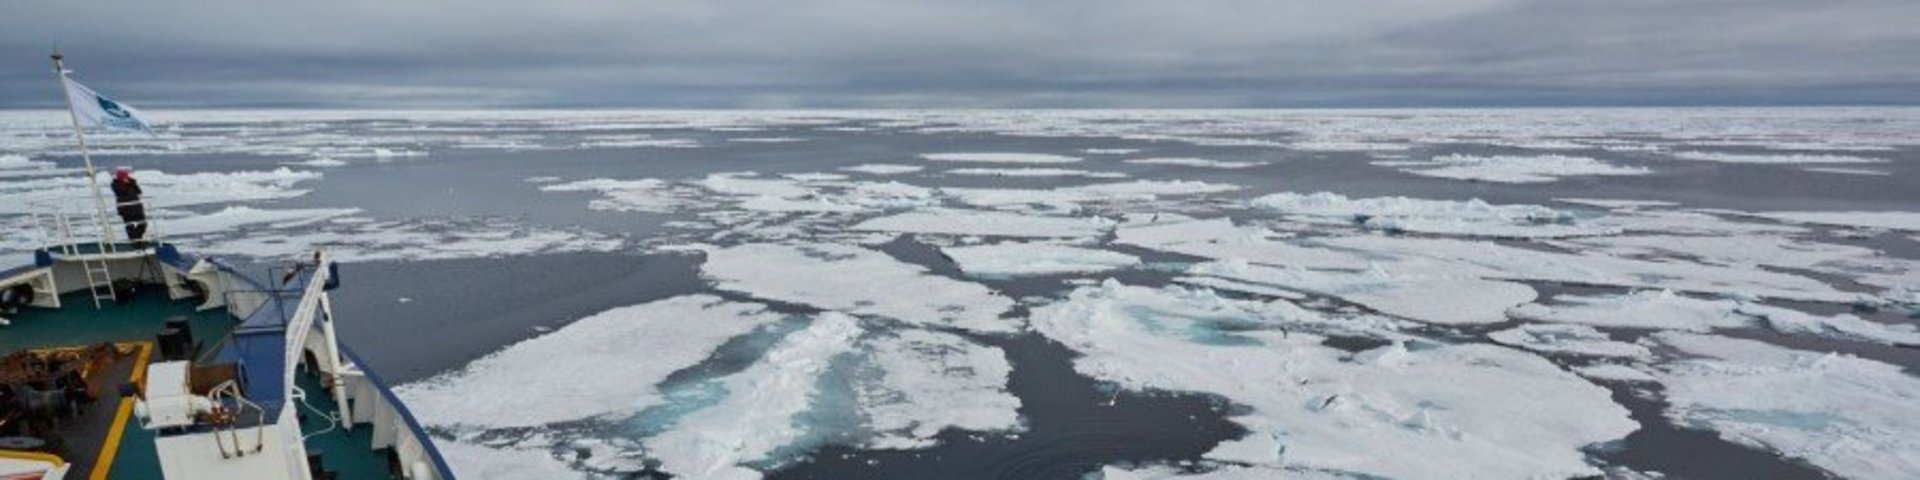 Eiskante nördlich von Spitzbergen